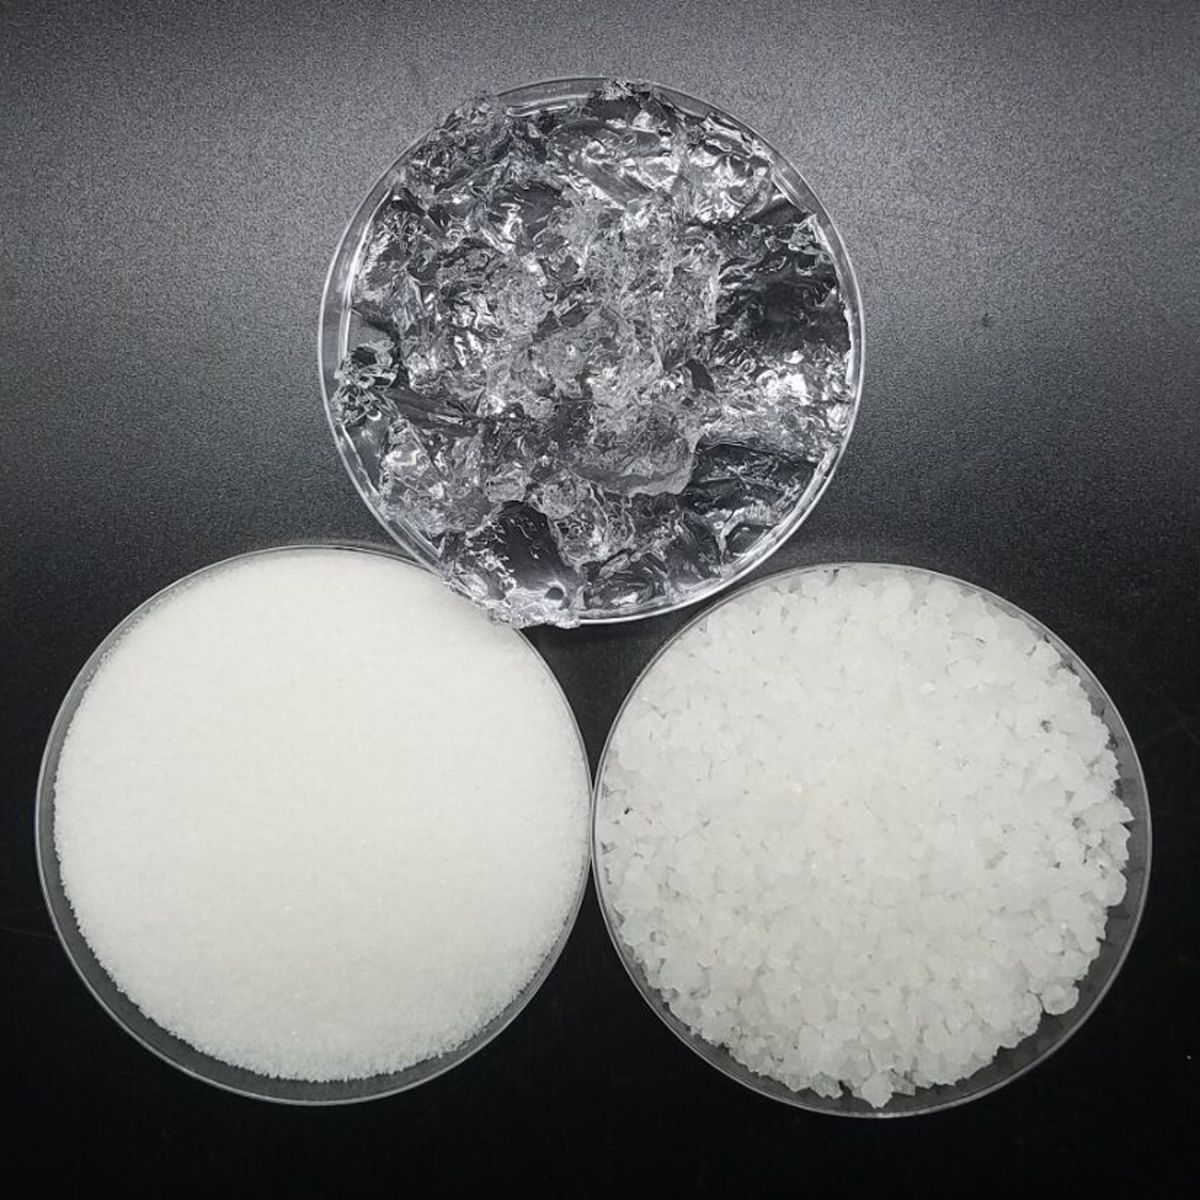 Sodium Polyacrylate là gì? Công dụng của Sodium Polyacrylate trong mỹ phẩm .2